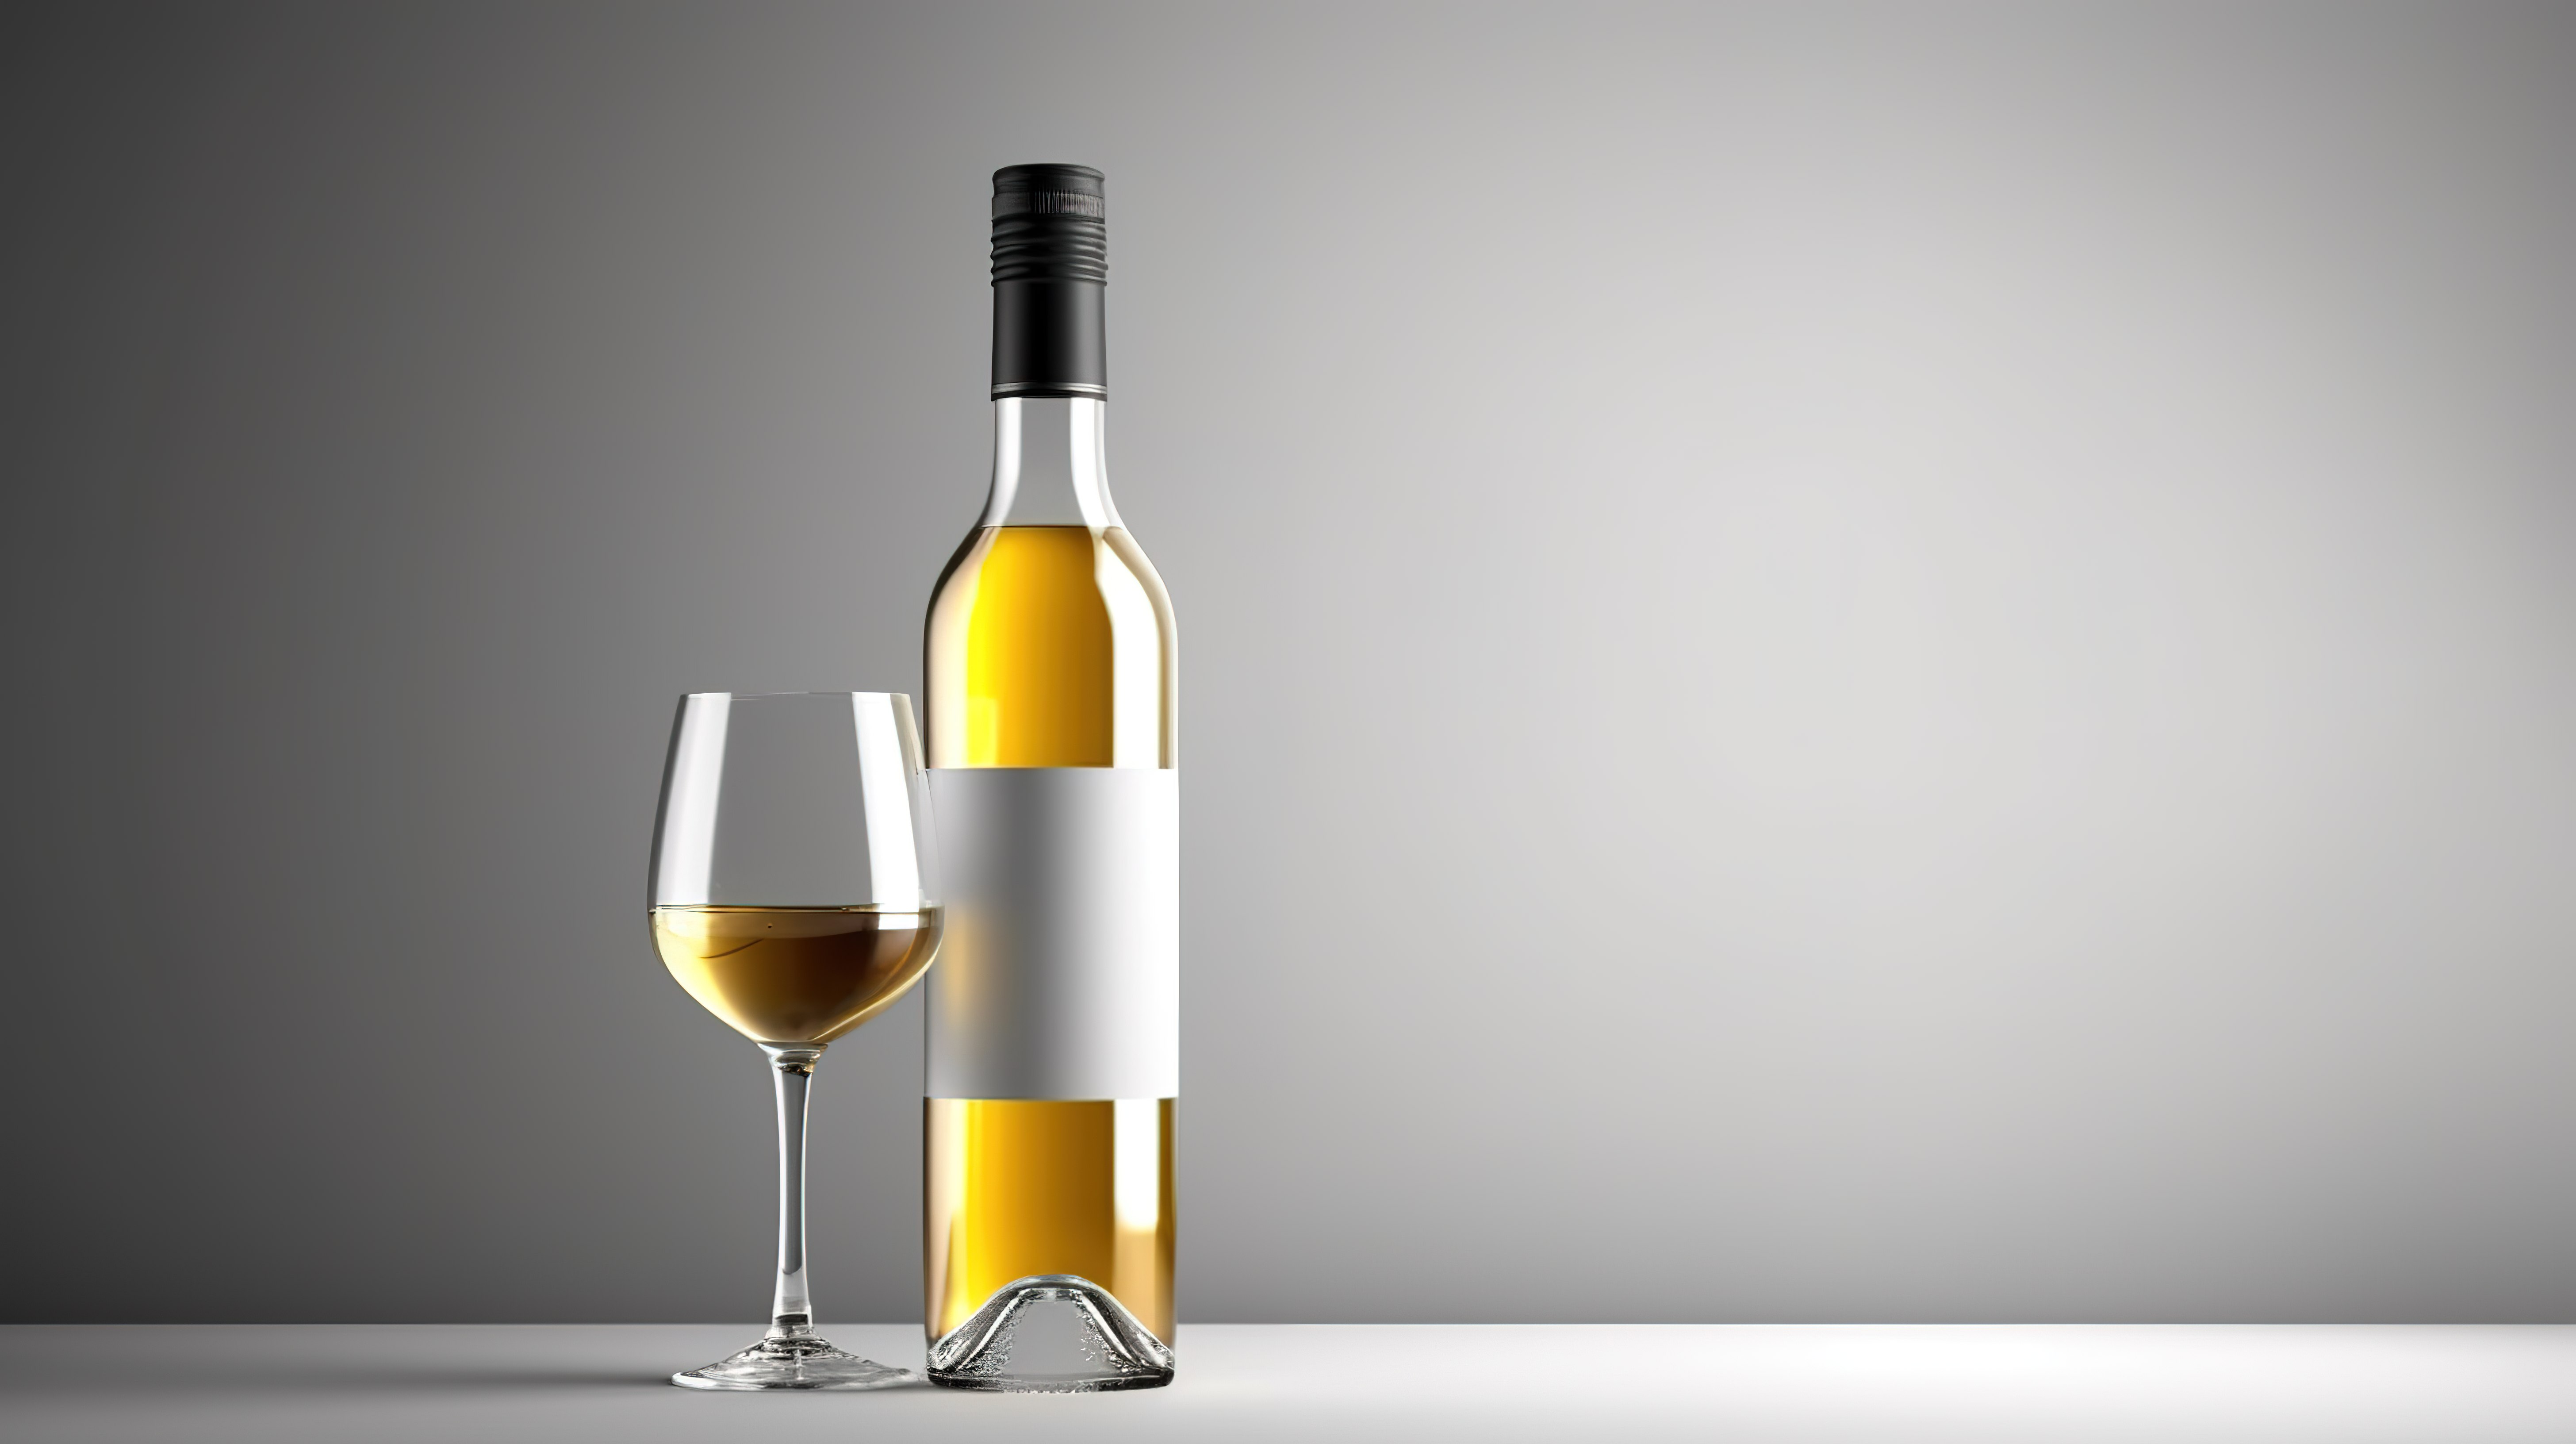 在灰色背景上展示的空白酒瓶是酒精饮料行业和广告数字渲染 3D 显示的理想产品图片